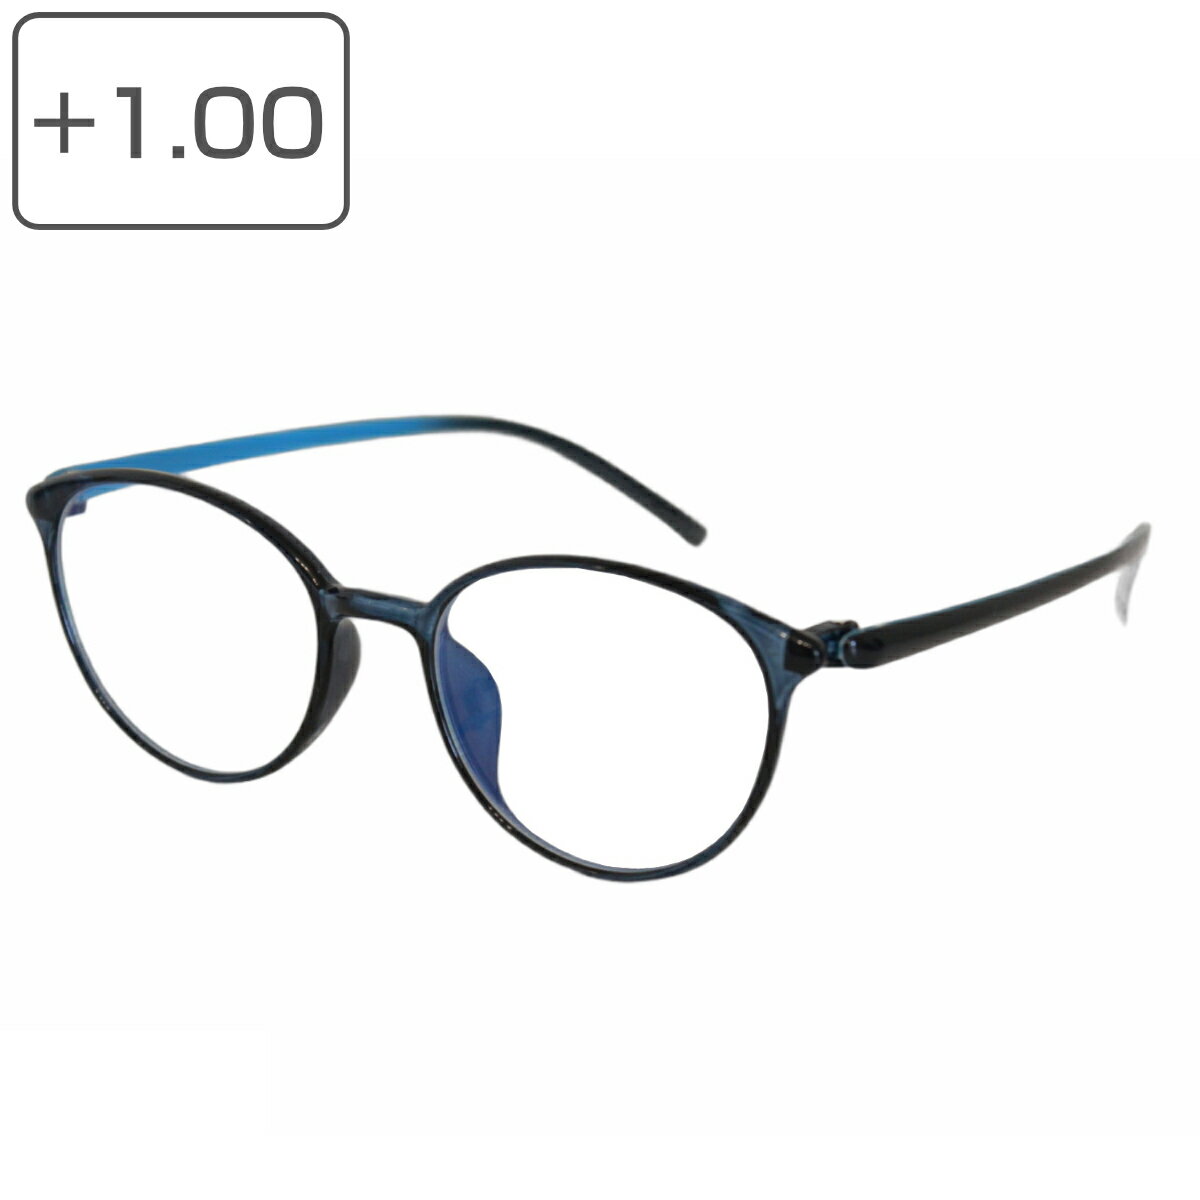 老眼鏡 シニアグラス ポリカーボネイト コンパクト メンズ レディース 1 （ 男性 女性 男女兼用 ブルーライトカット 超軽量 スリム おしゃれ フチ ブルー 眼鏡 メガネ リーディンググラス 老眼 度あり ） 【3980円以上送料無料】